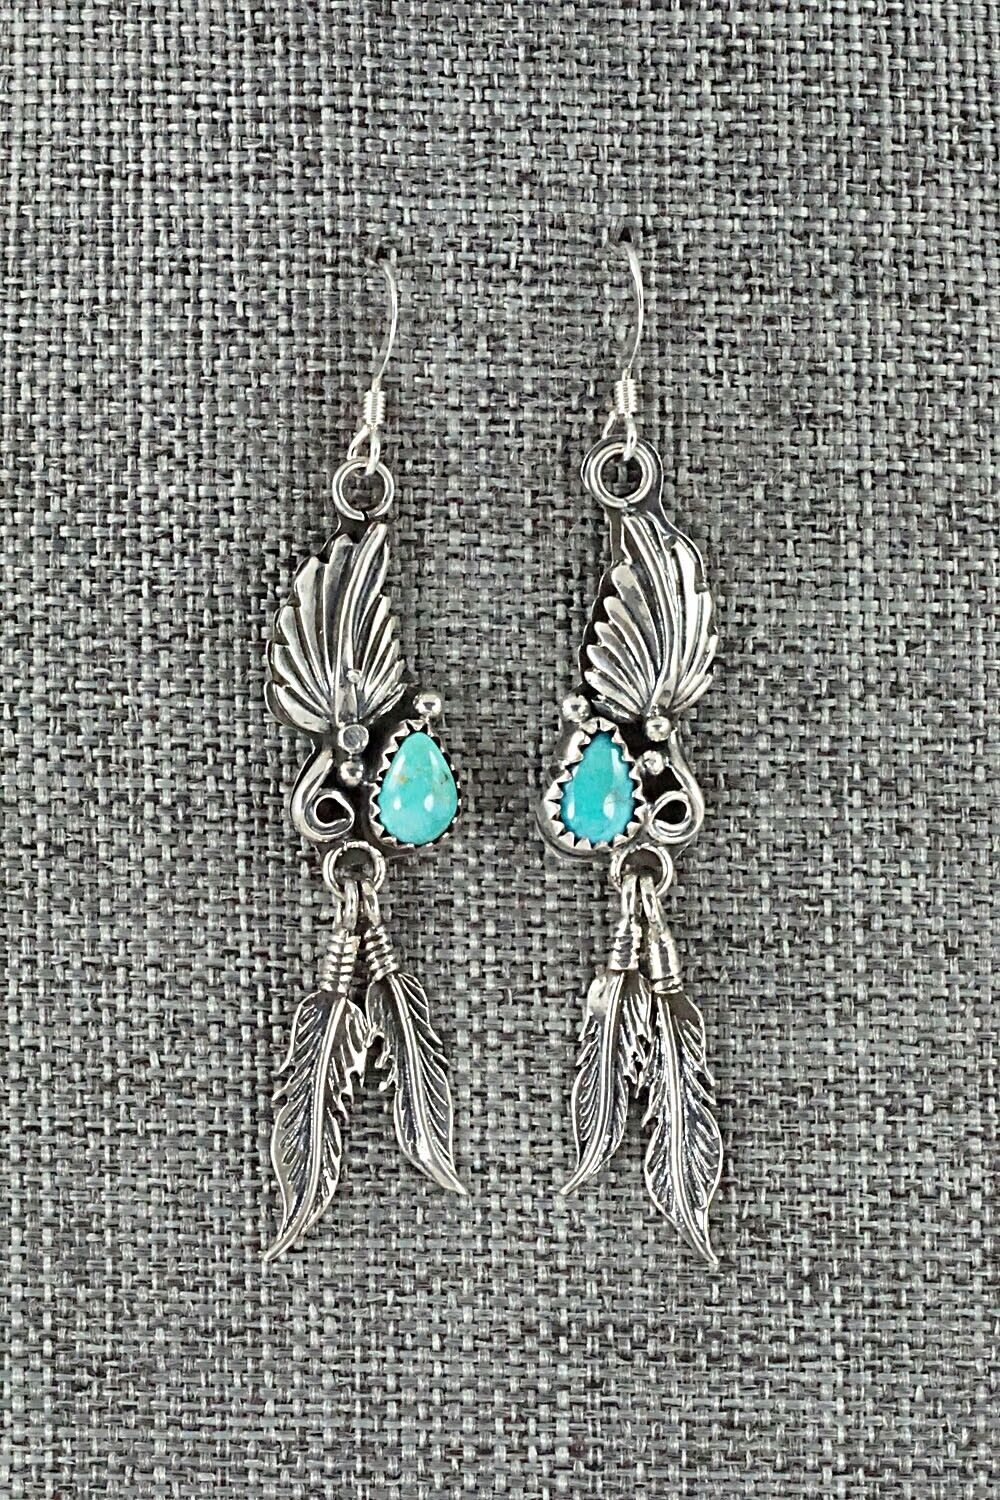 Turquoise & Sterling Silver Earrings - Etta Larry